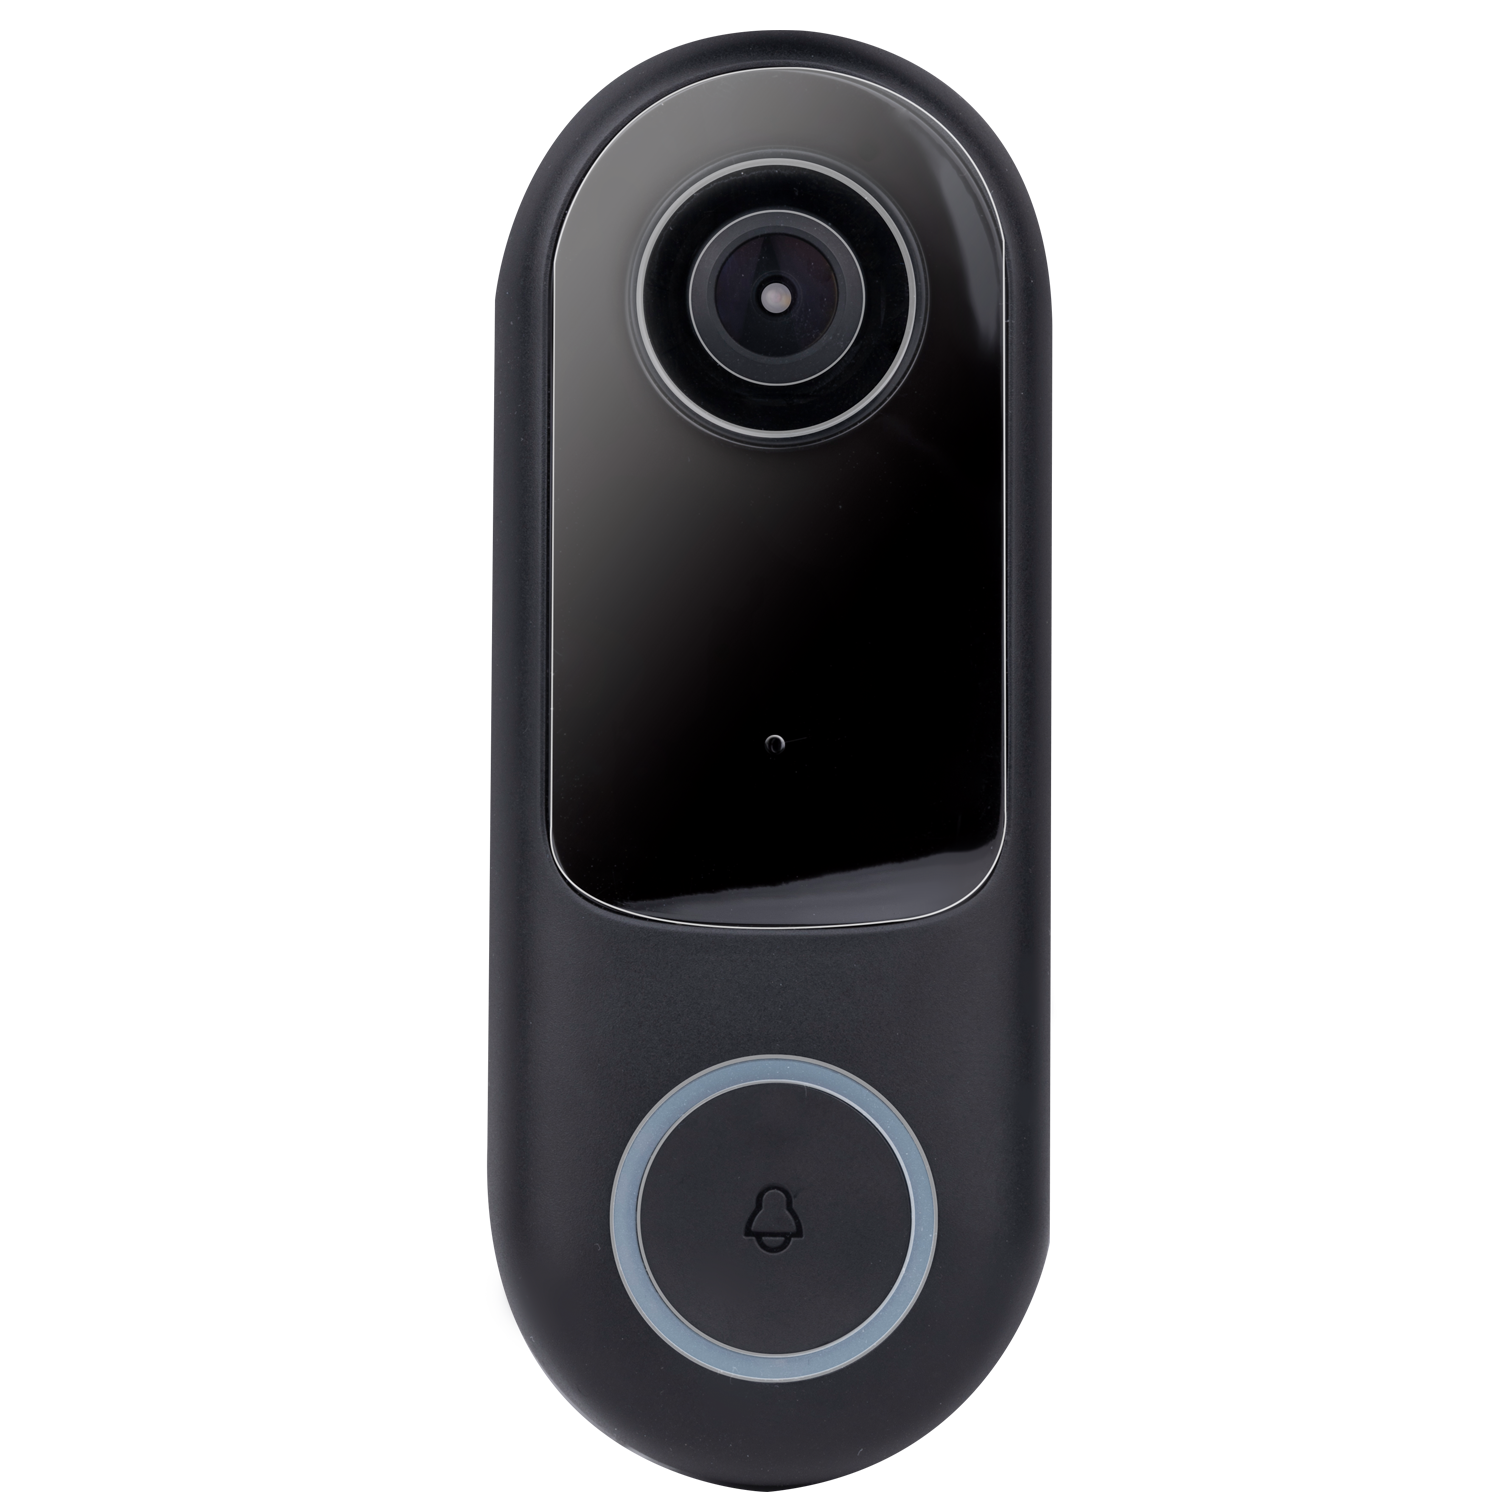 Smart Video doorbell